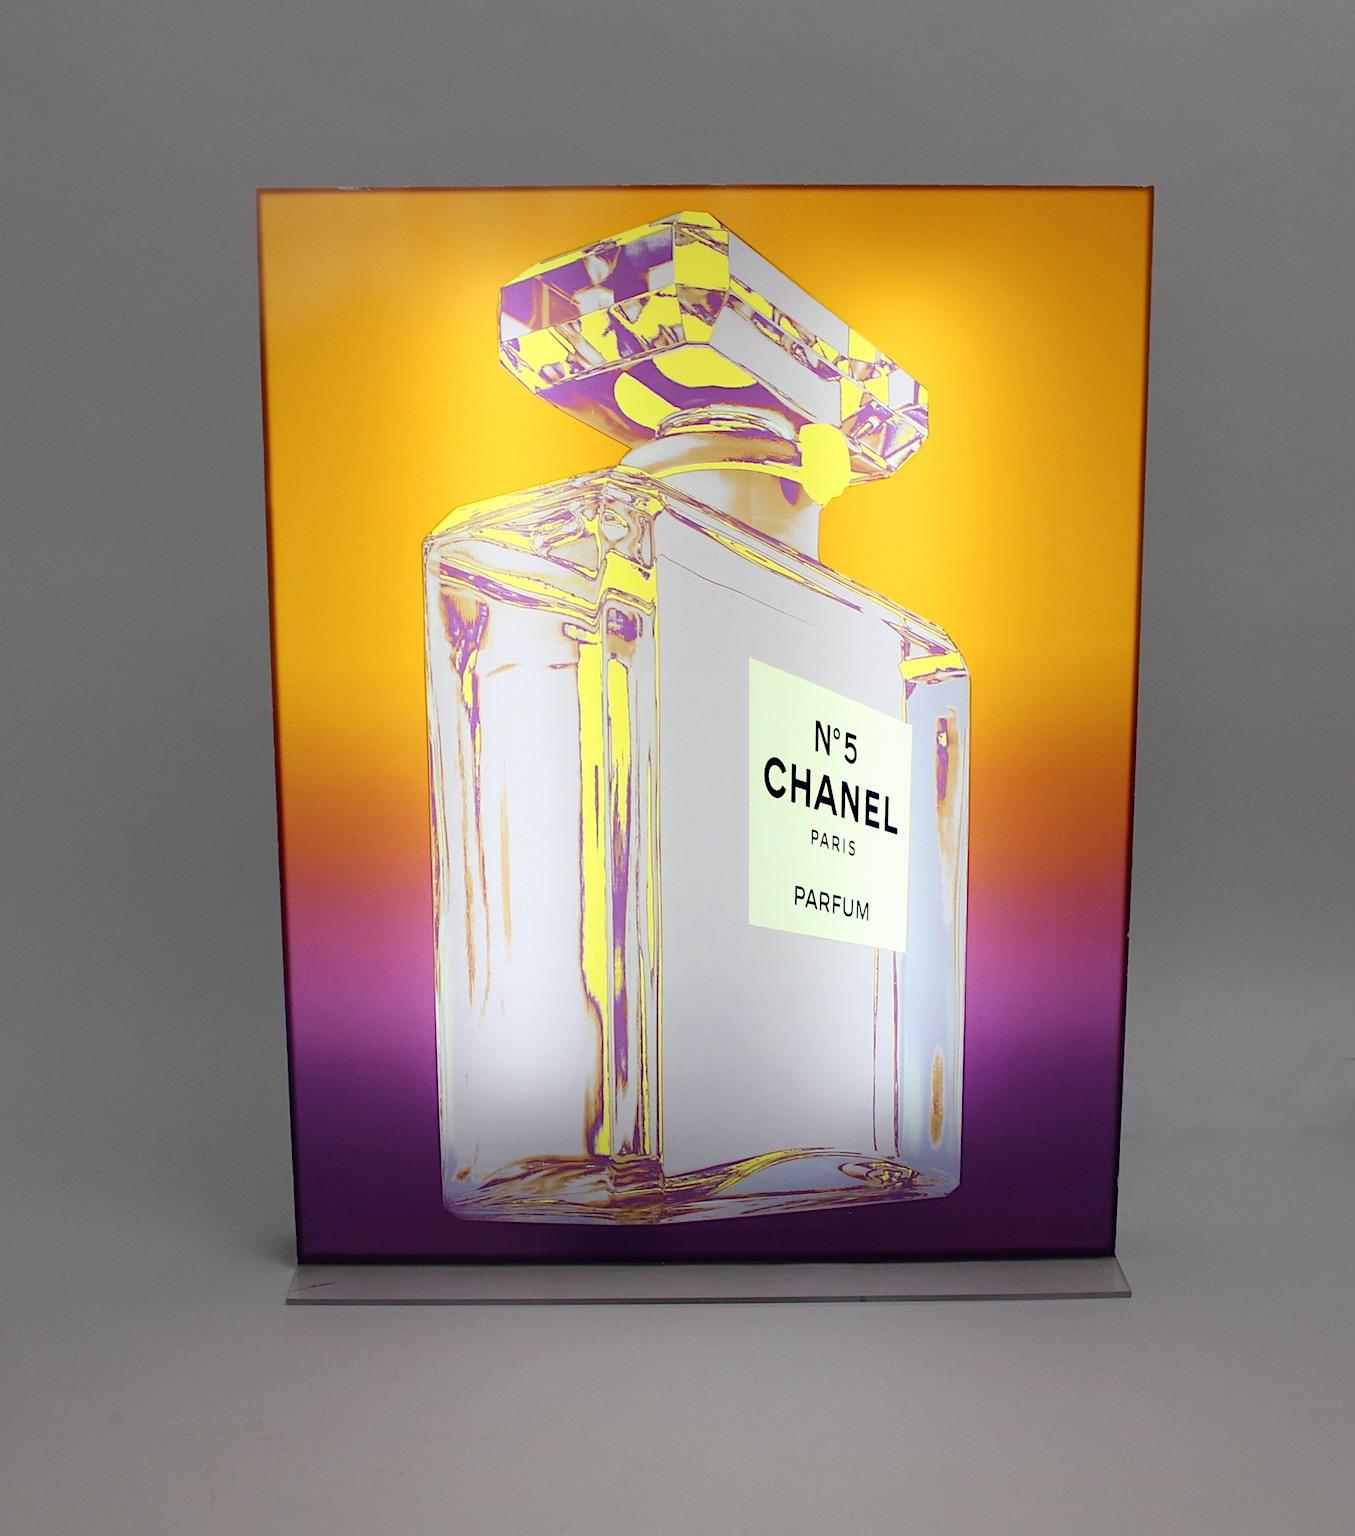 Présentoir publicitaire vintage Pop Art Chanel No. 5 avec le signe iconique du flacon Chanel No. 5 d'après Andy Warhol, qui était utilisé dans les parfumeries et les magasins de produits de beauté vers 1999.
La société Chanel mettait cette